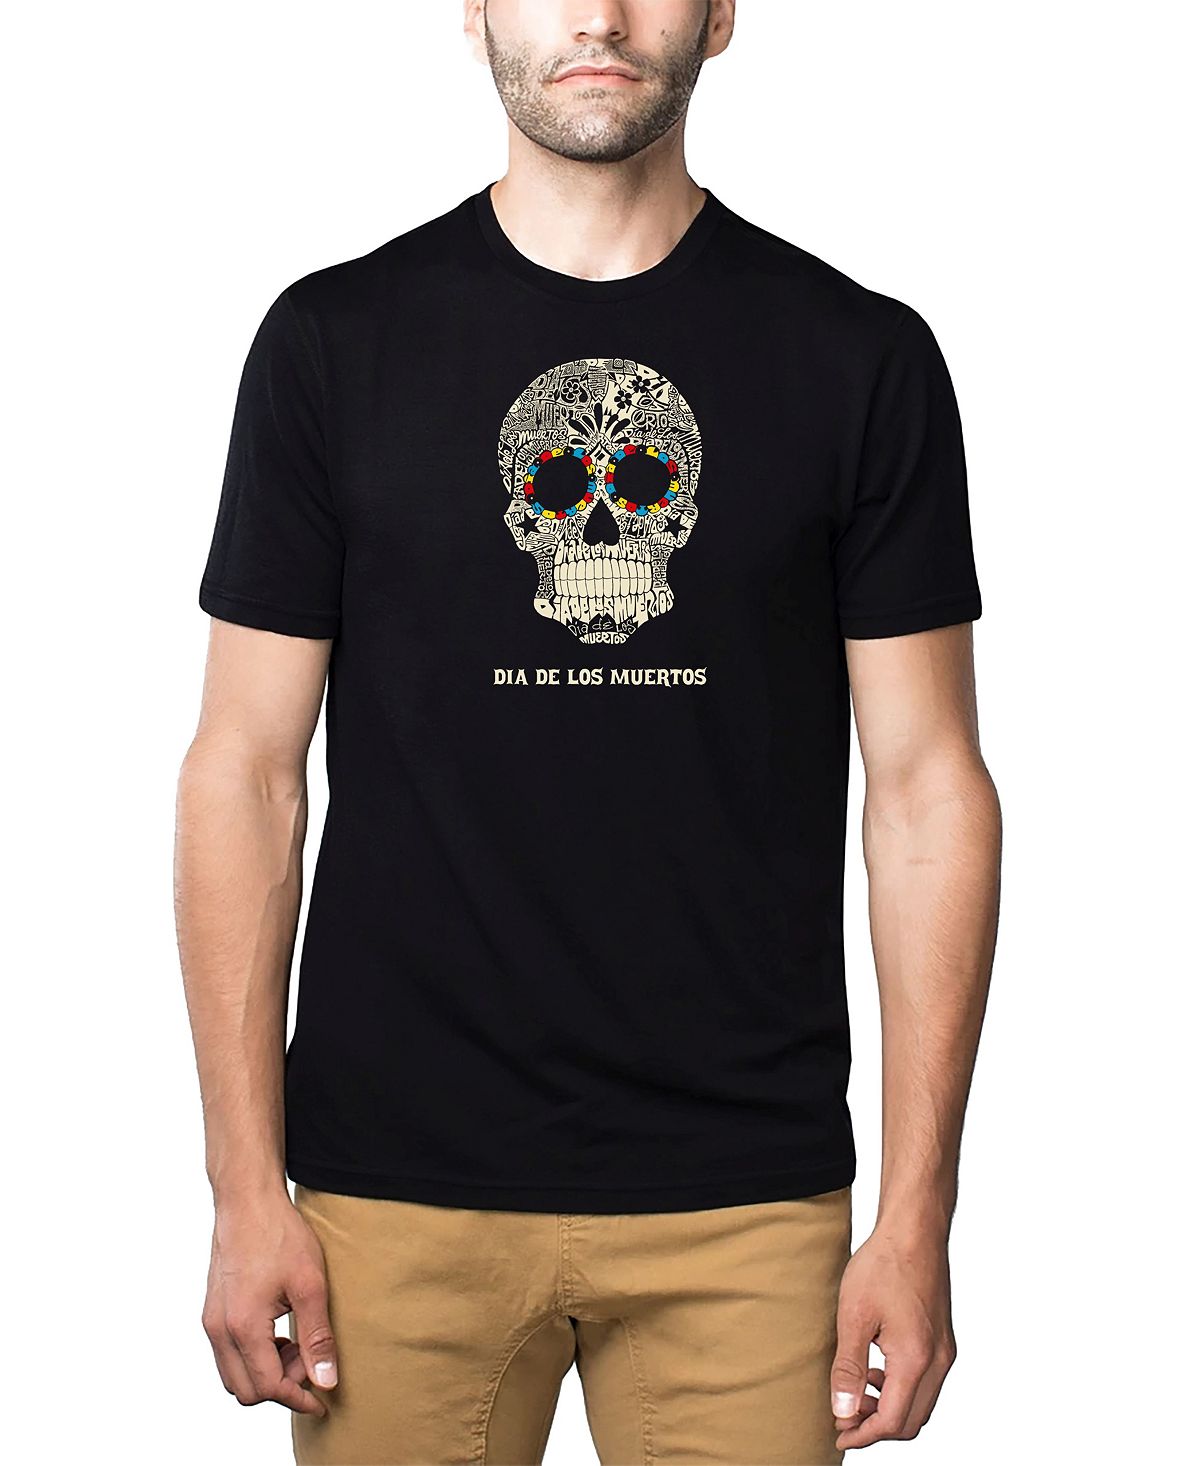 Мужская футболка премиум-класса word art - dia de los muertos LA Pop Art, черный